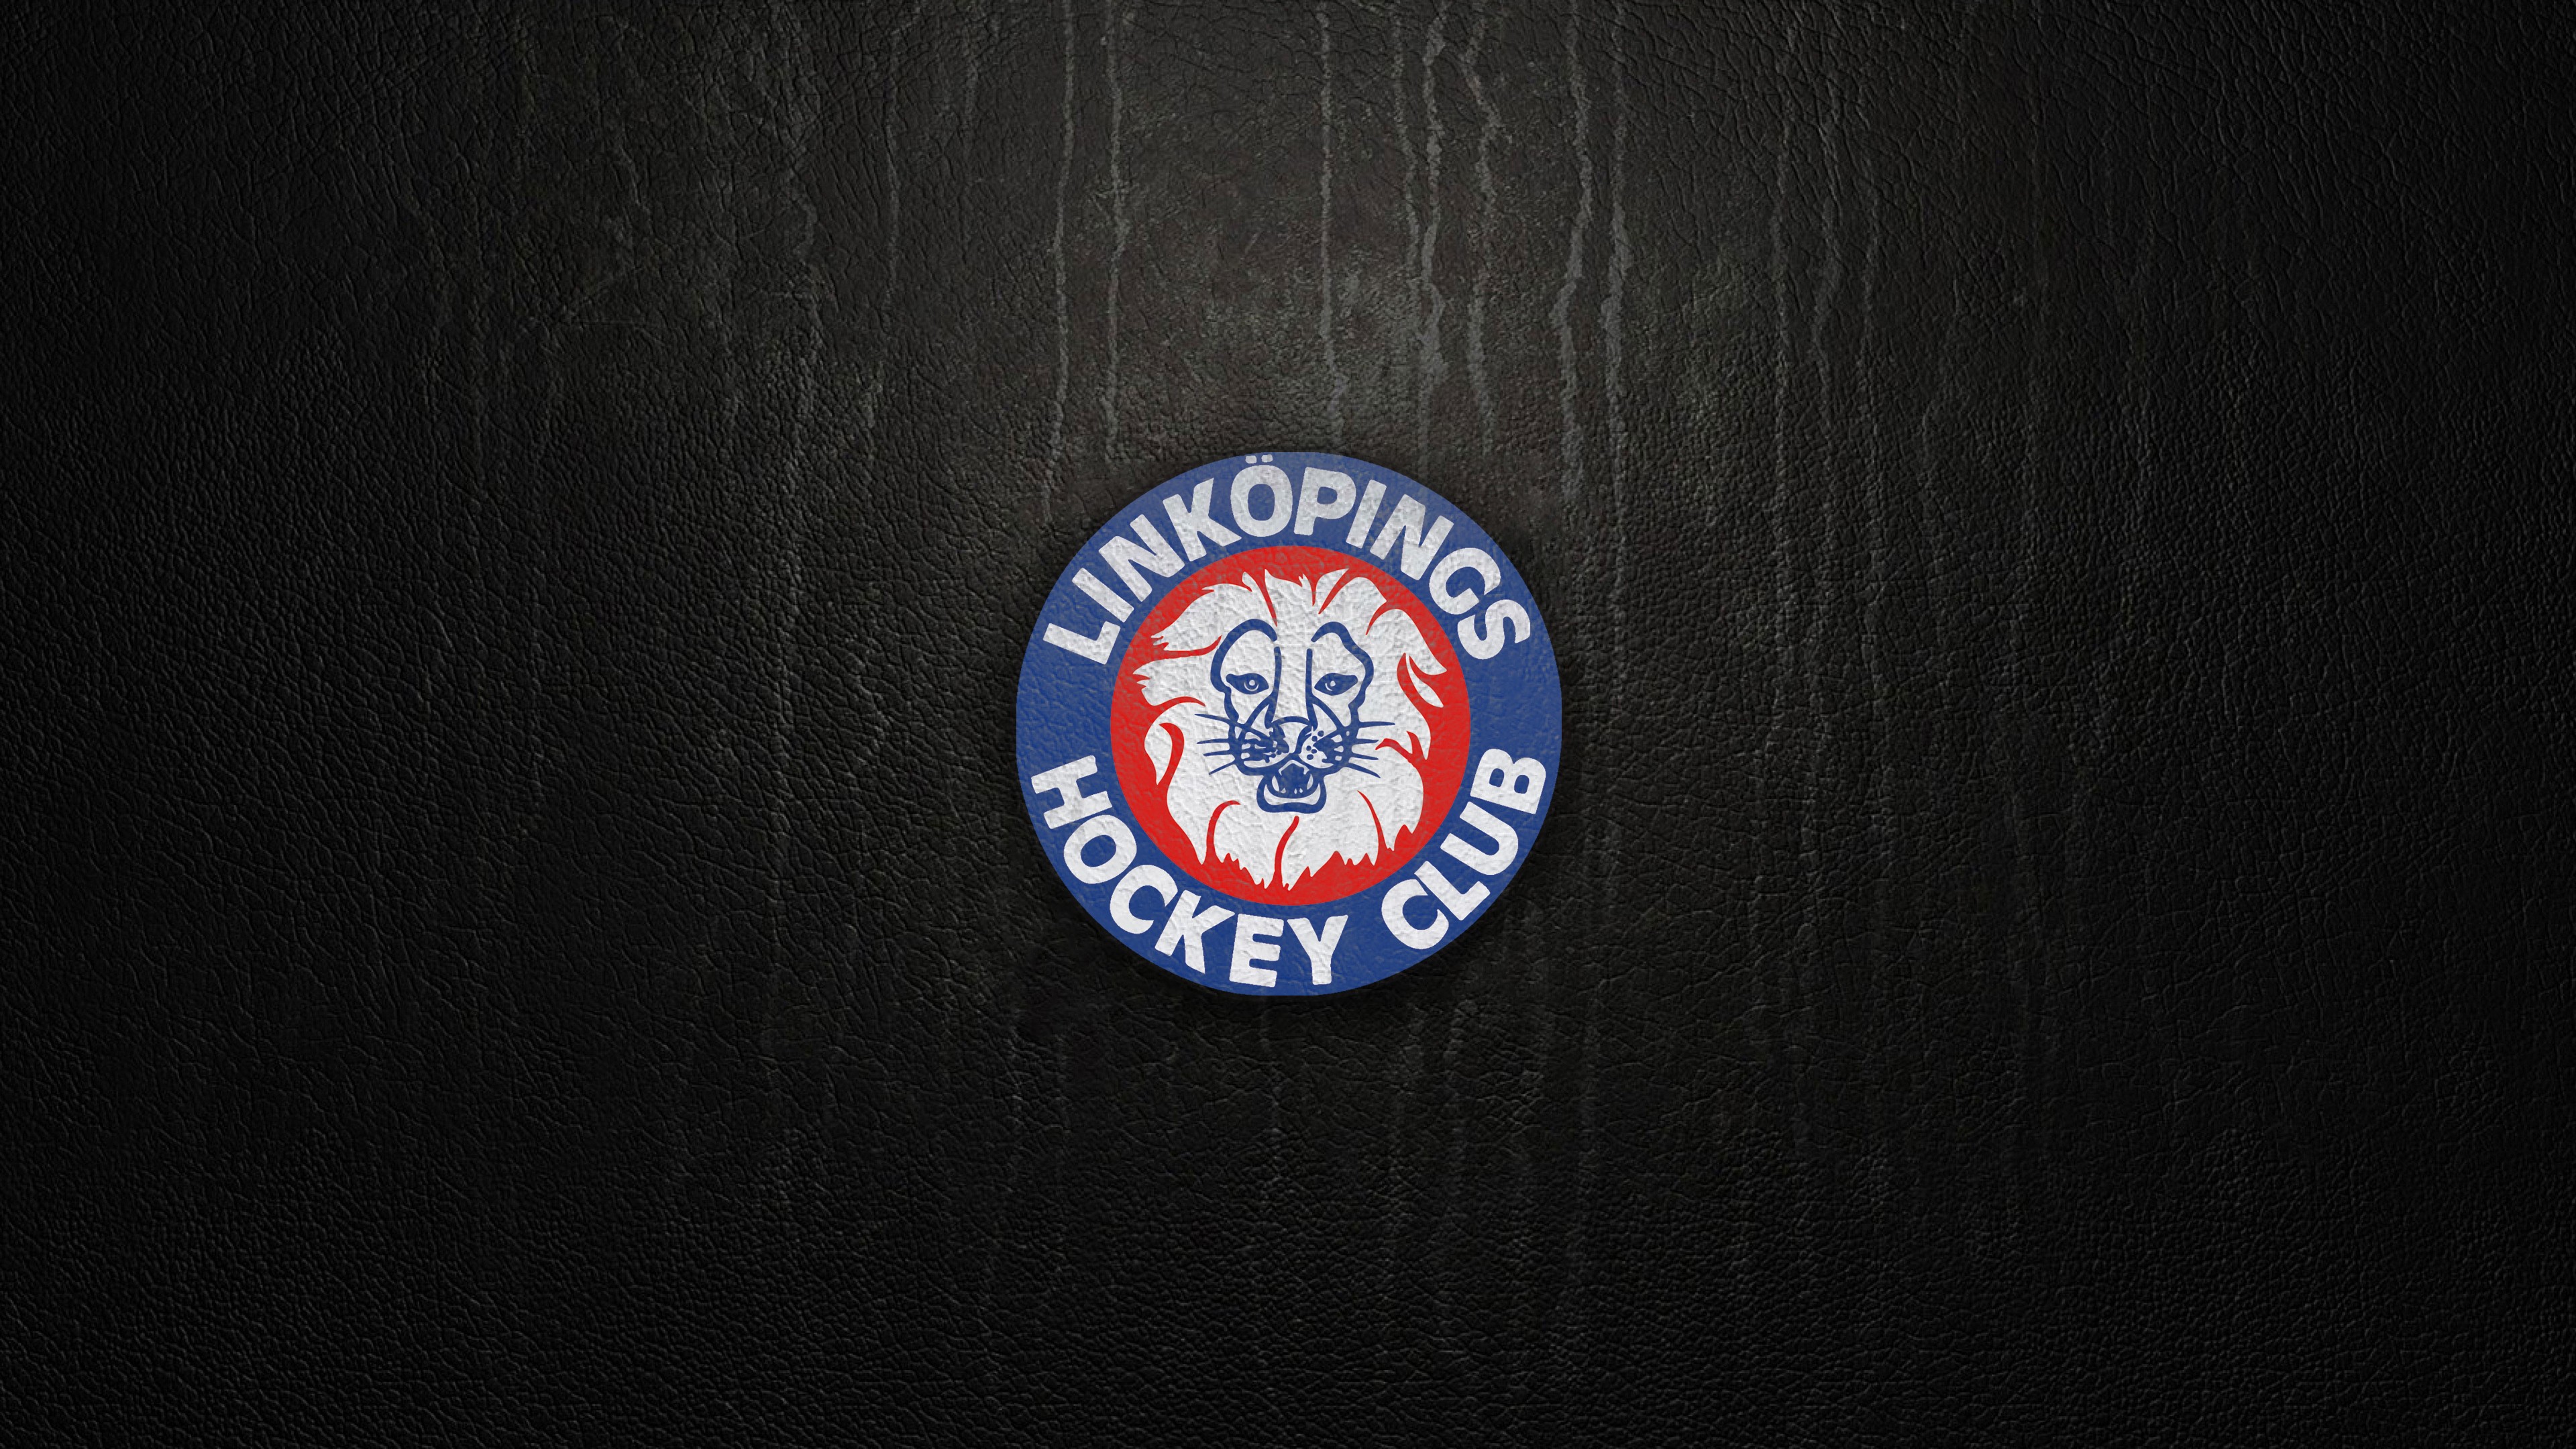 General 3840x2160 LHC Linköping Hockey SHL logo sport dark background